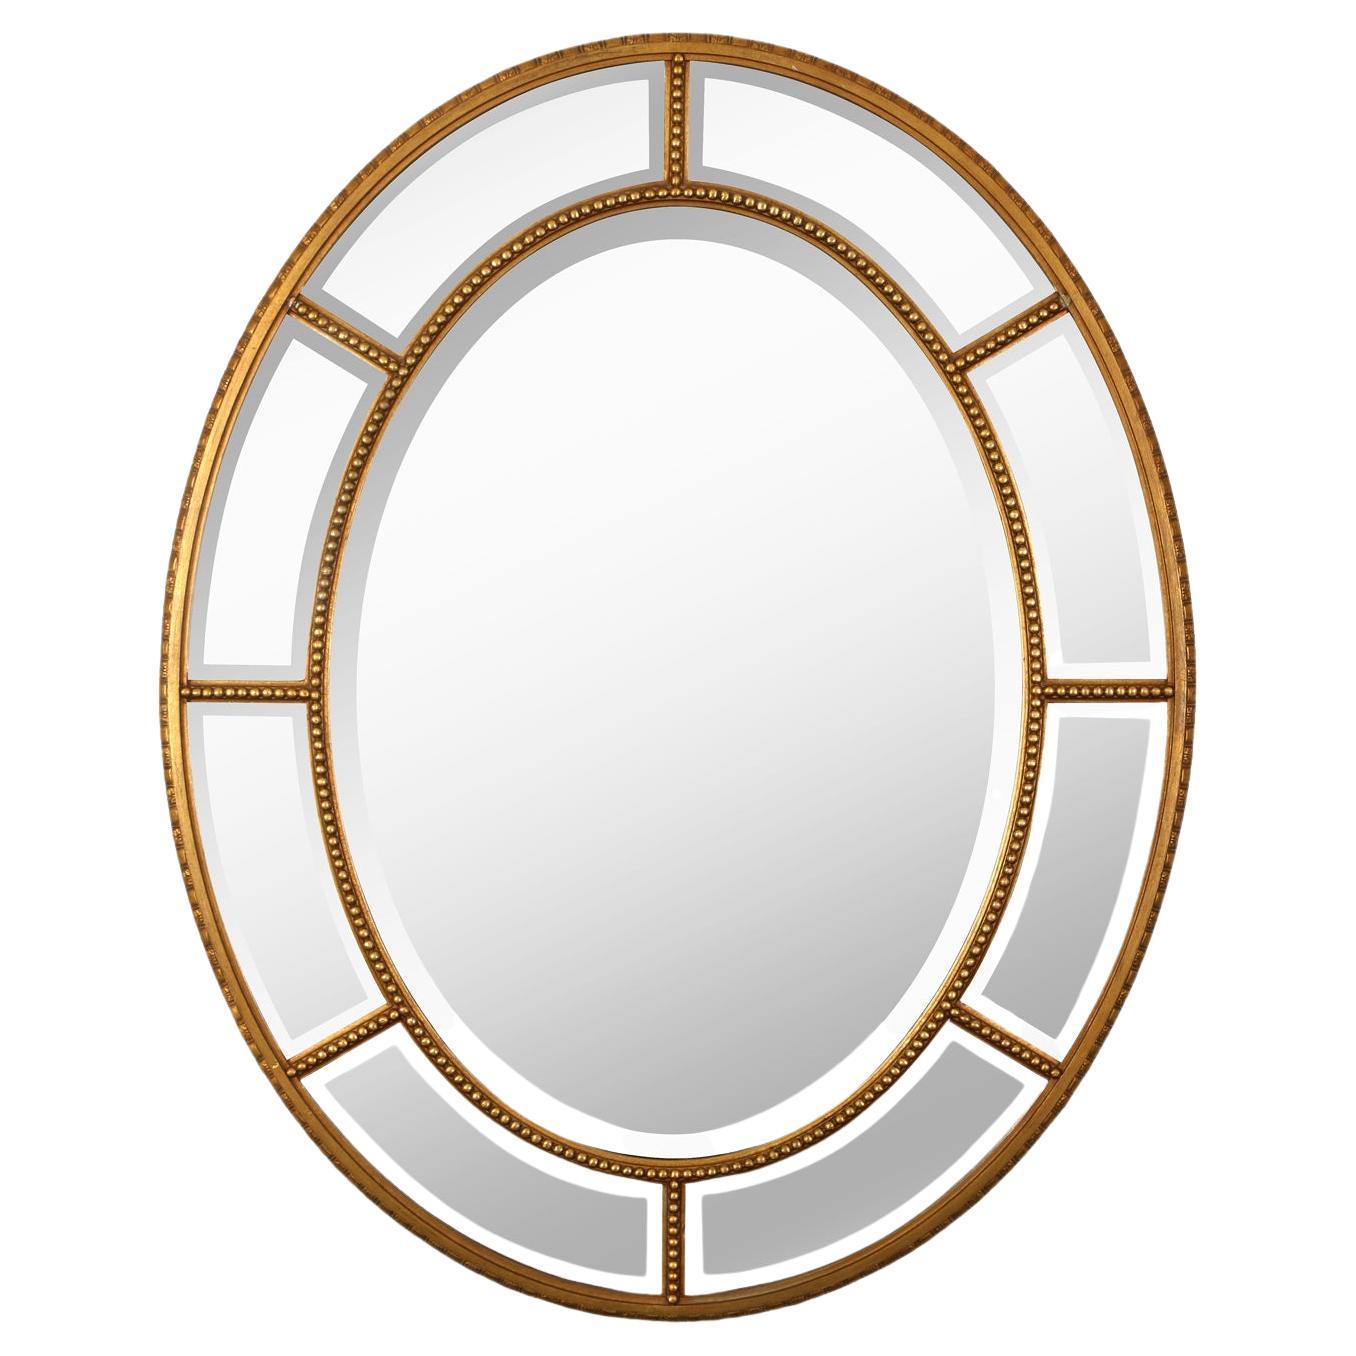 Ovaler abgeschrägter Vintage-Spiegel mit Perlendetails